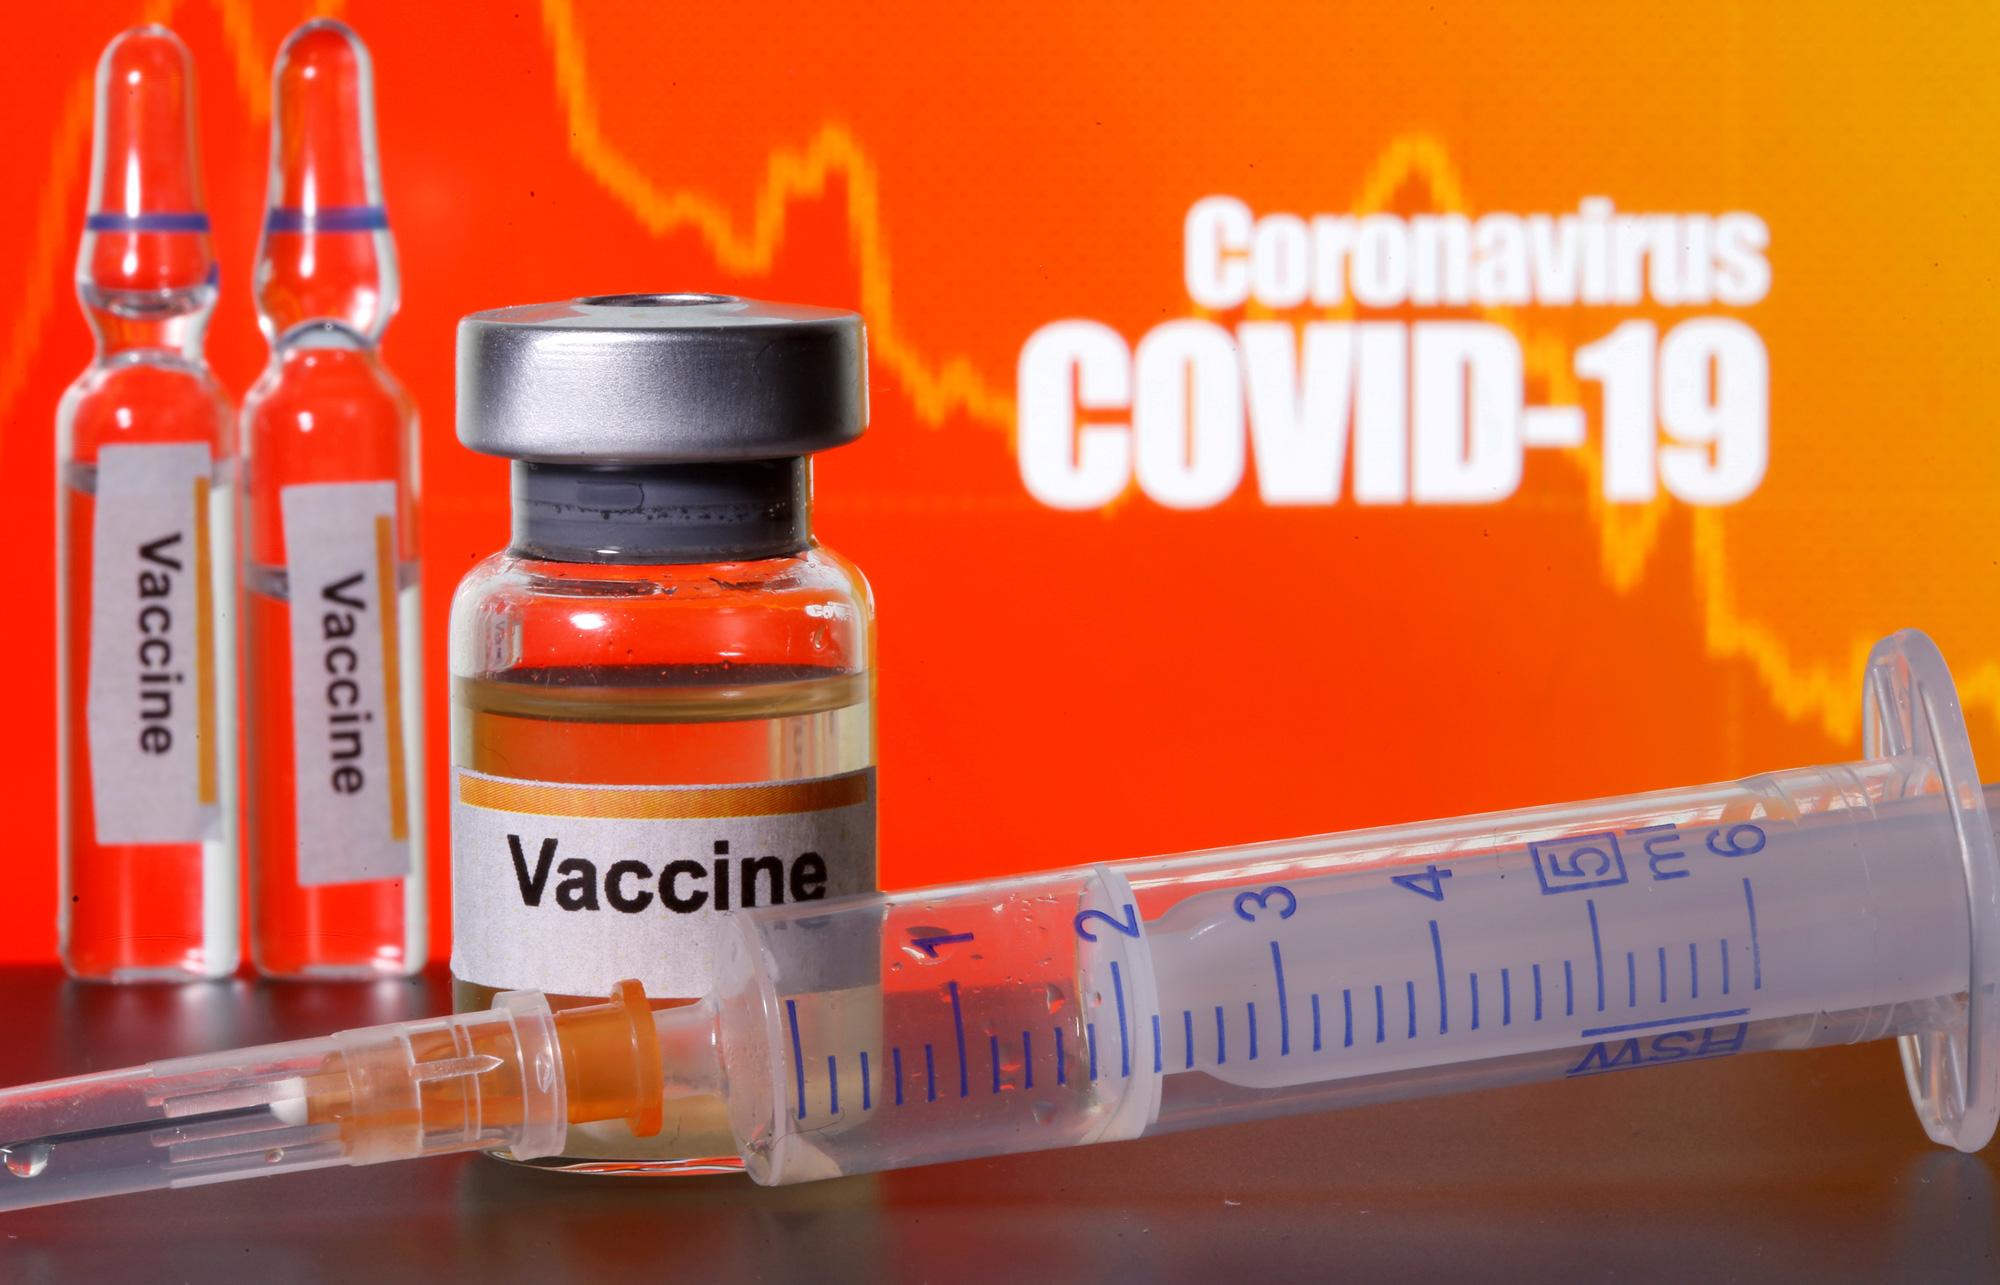 Hãy chuẩn bị tinh thần khi các đồn đoán về vắc xin sẽ sớm dẫn dắt biến động giá của mọi loại tài sản!